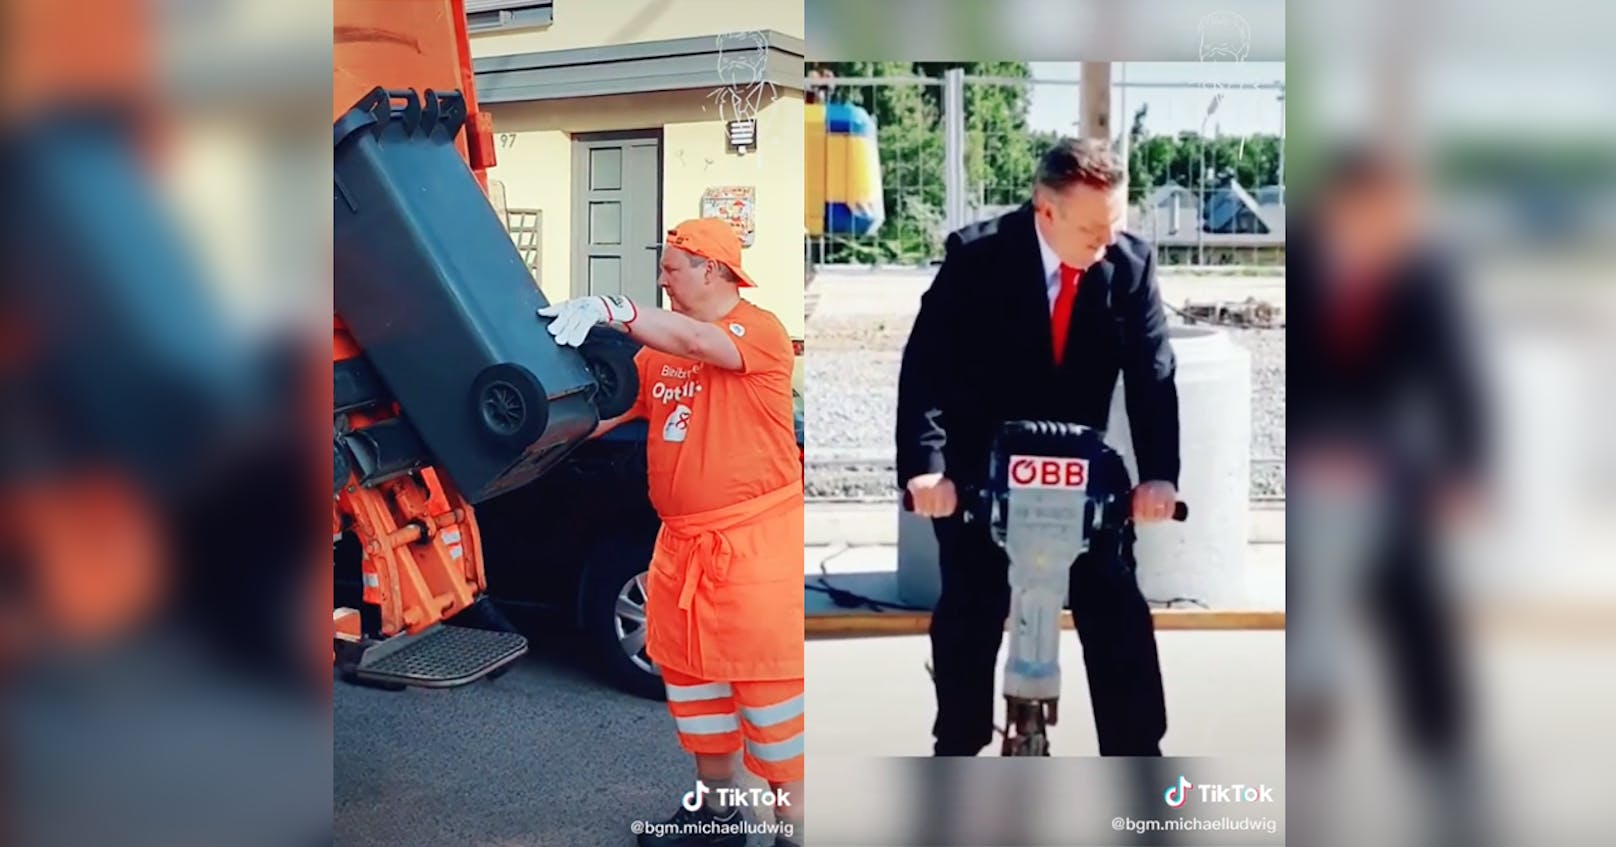 Auf Tiktok zeigt Wiens Bürgermeister seine humorvolle Seite